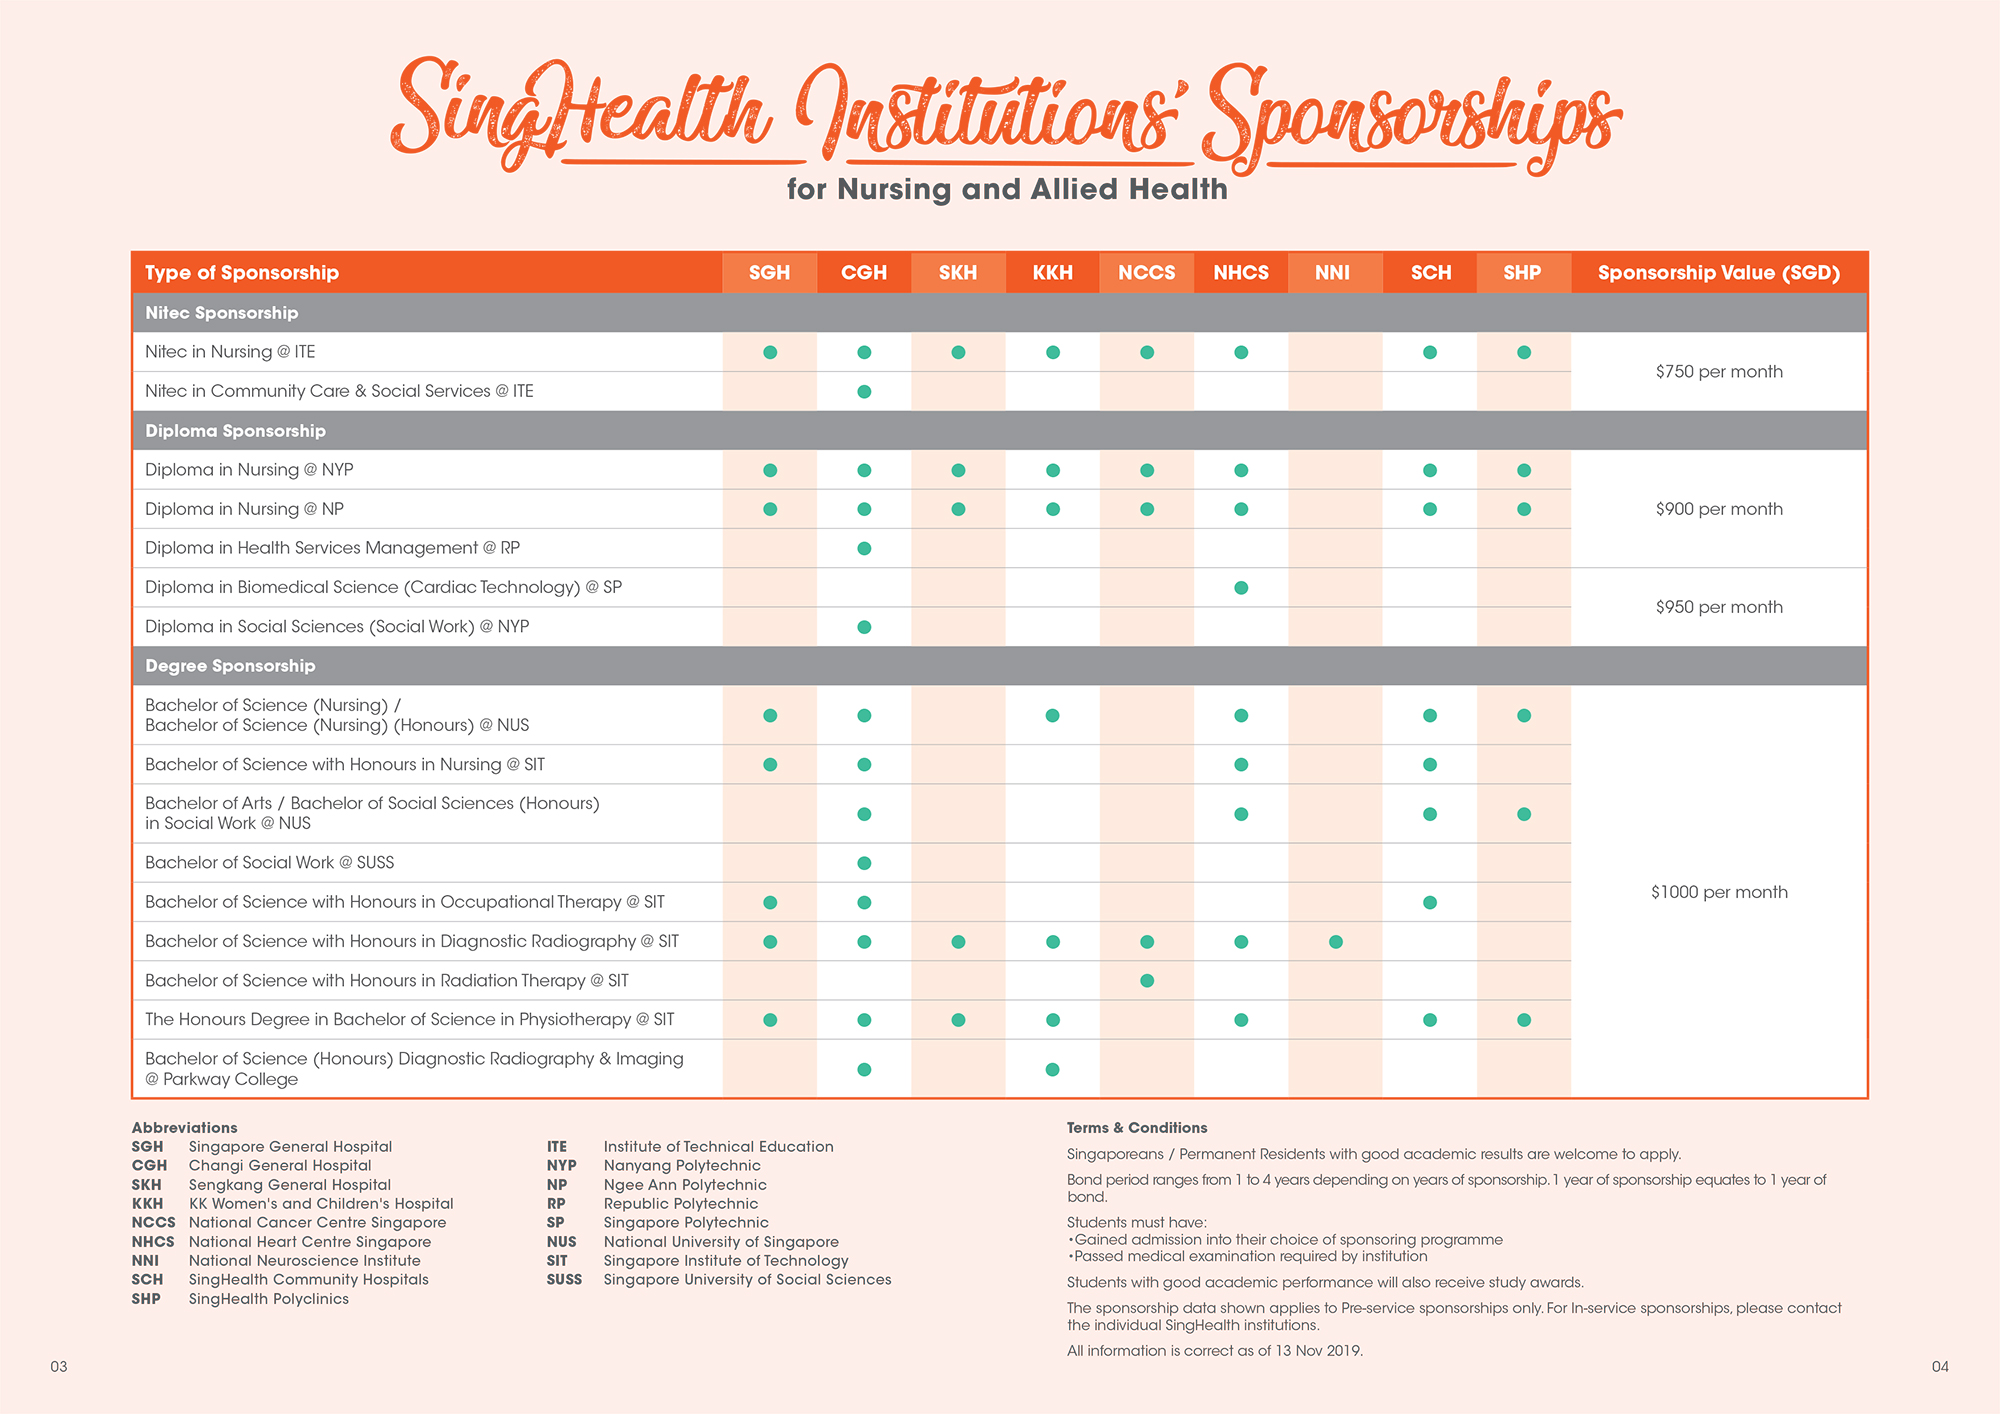 SingHealth Institutions' Sponsorships data